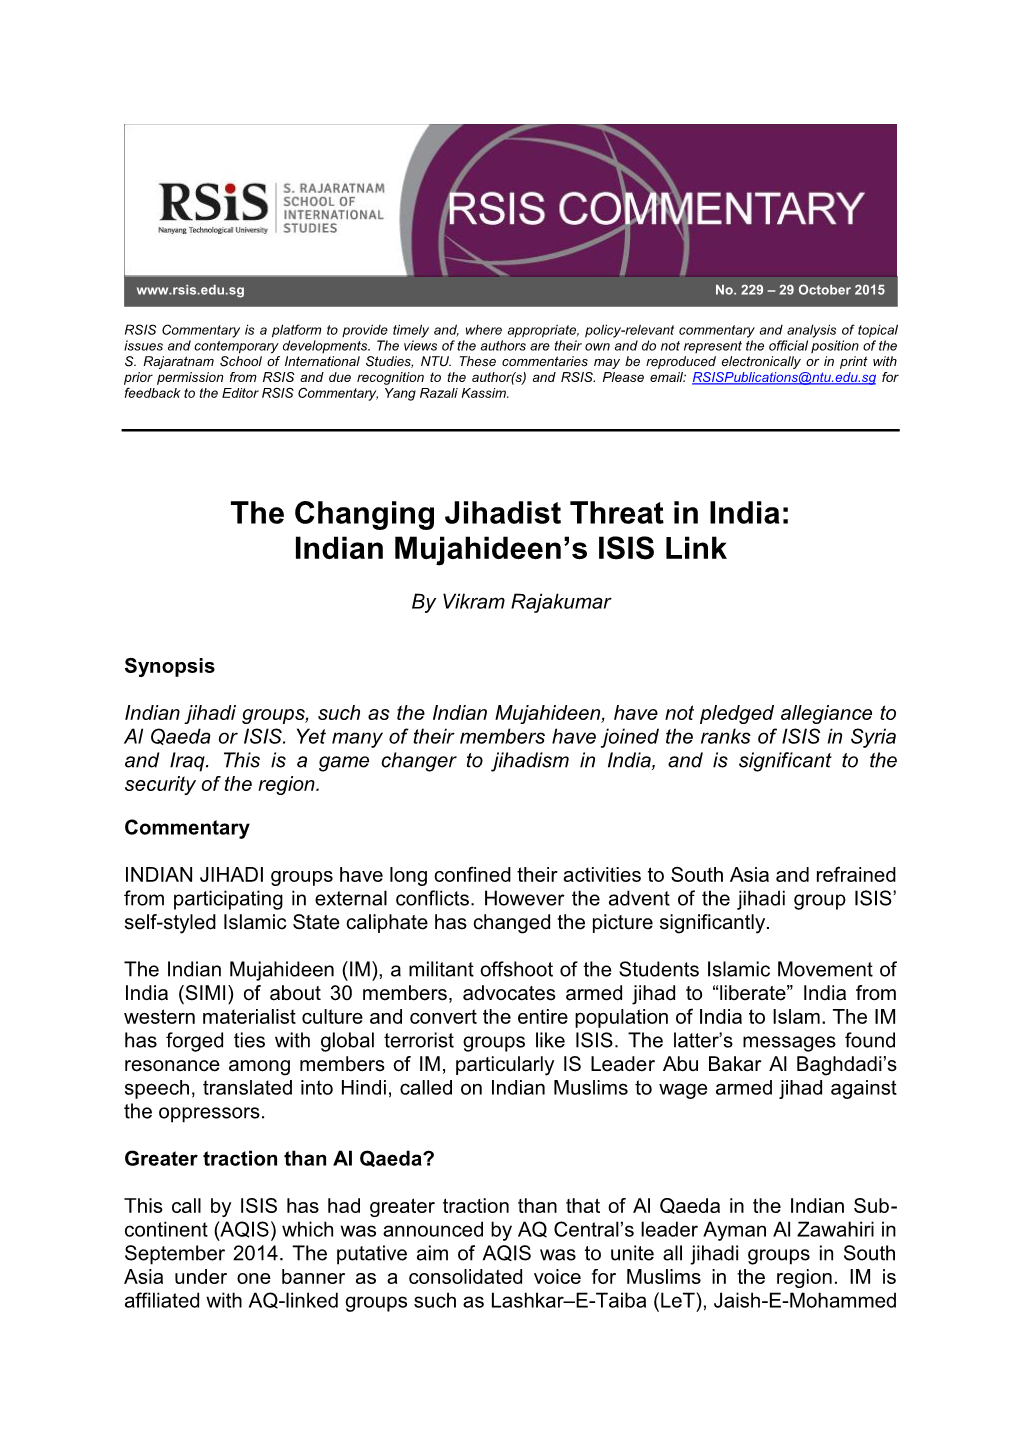 Indian Mujahideen's ISIS Link